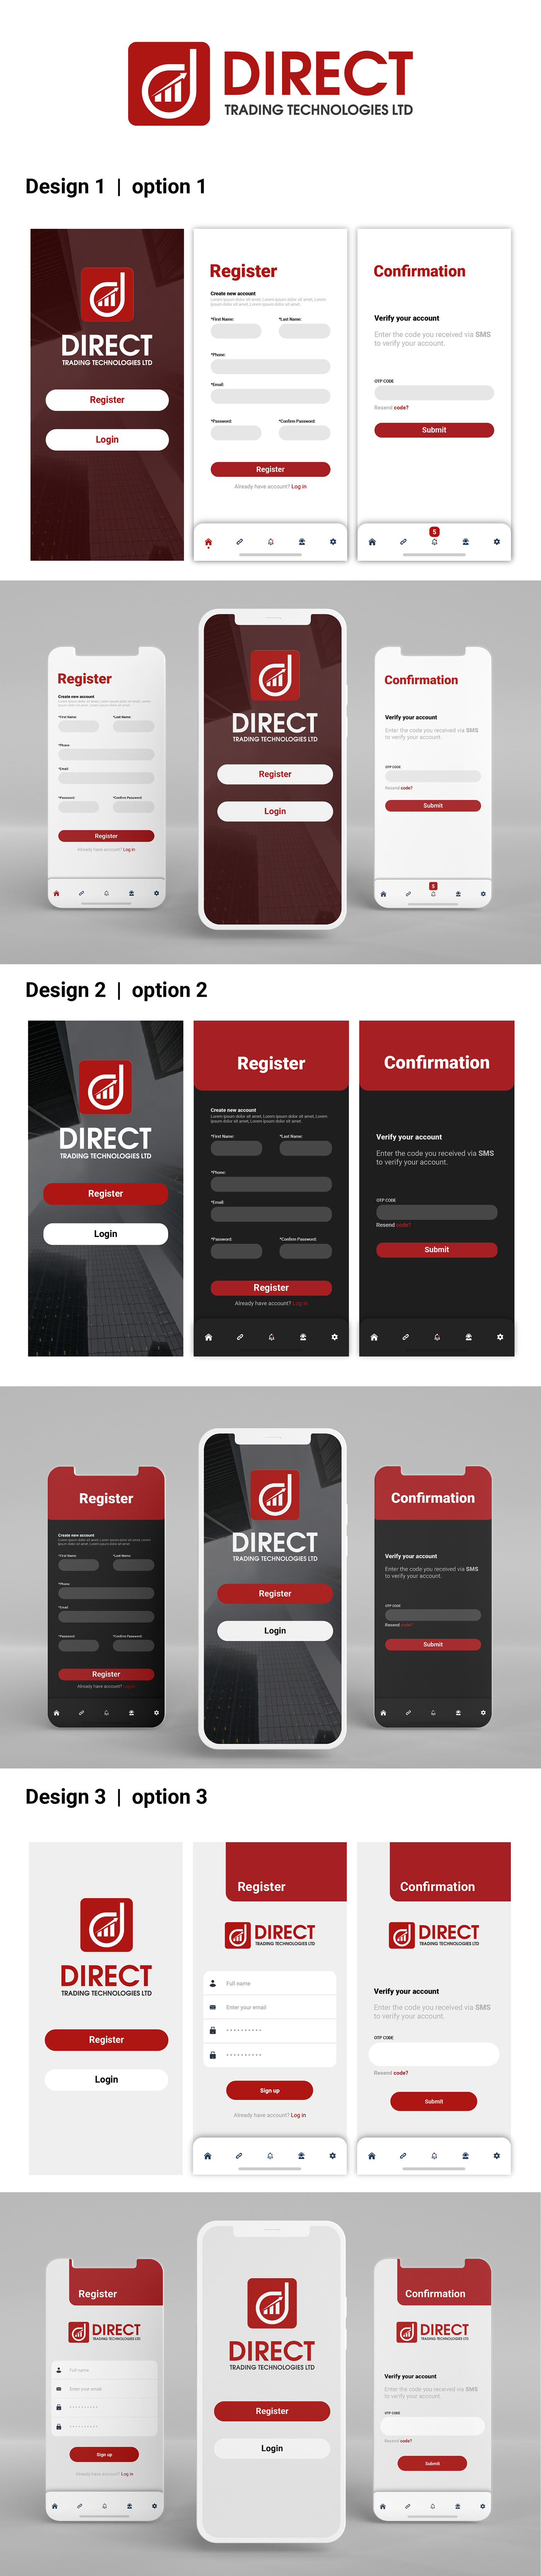 Brand Design branding  Mobile app